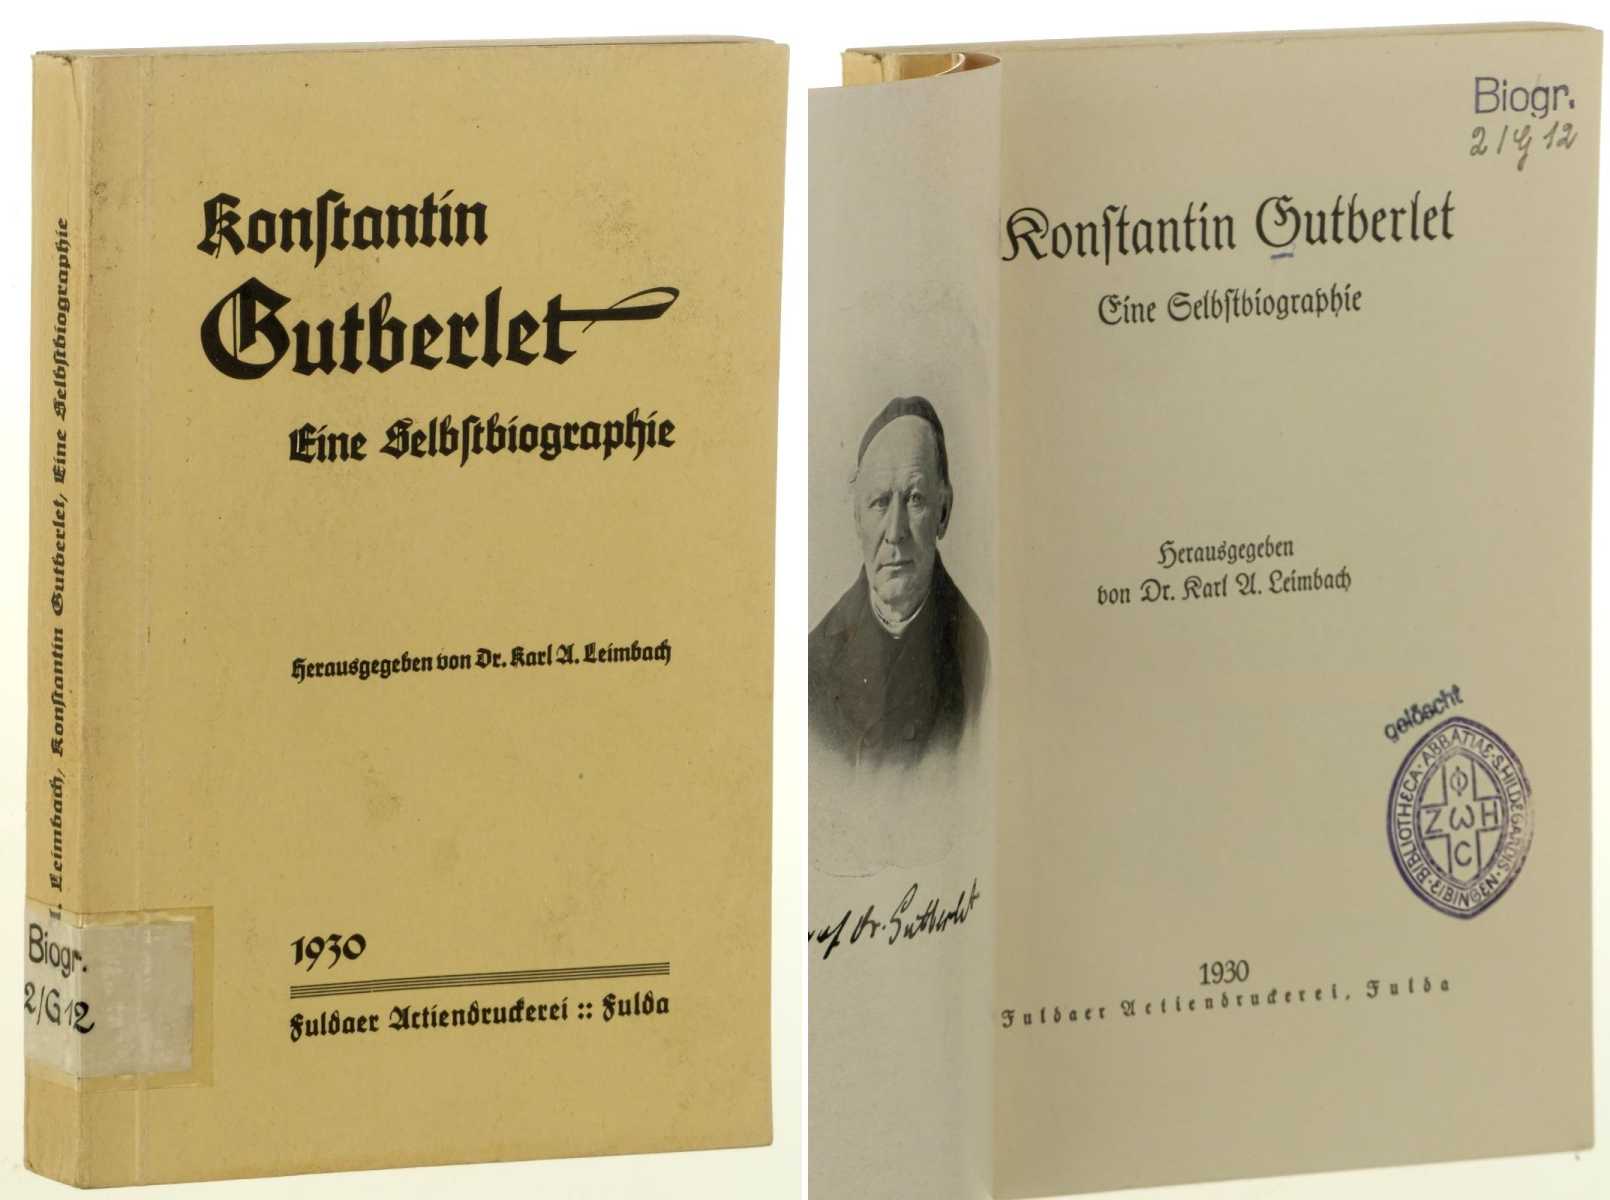 Gutberlet, Konstantin:  Eine Selbstbiographie. Hrsg. von Karl Alexander Leimbach. 